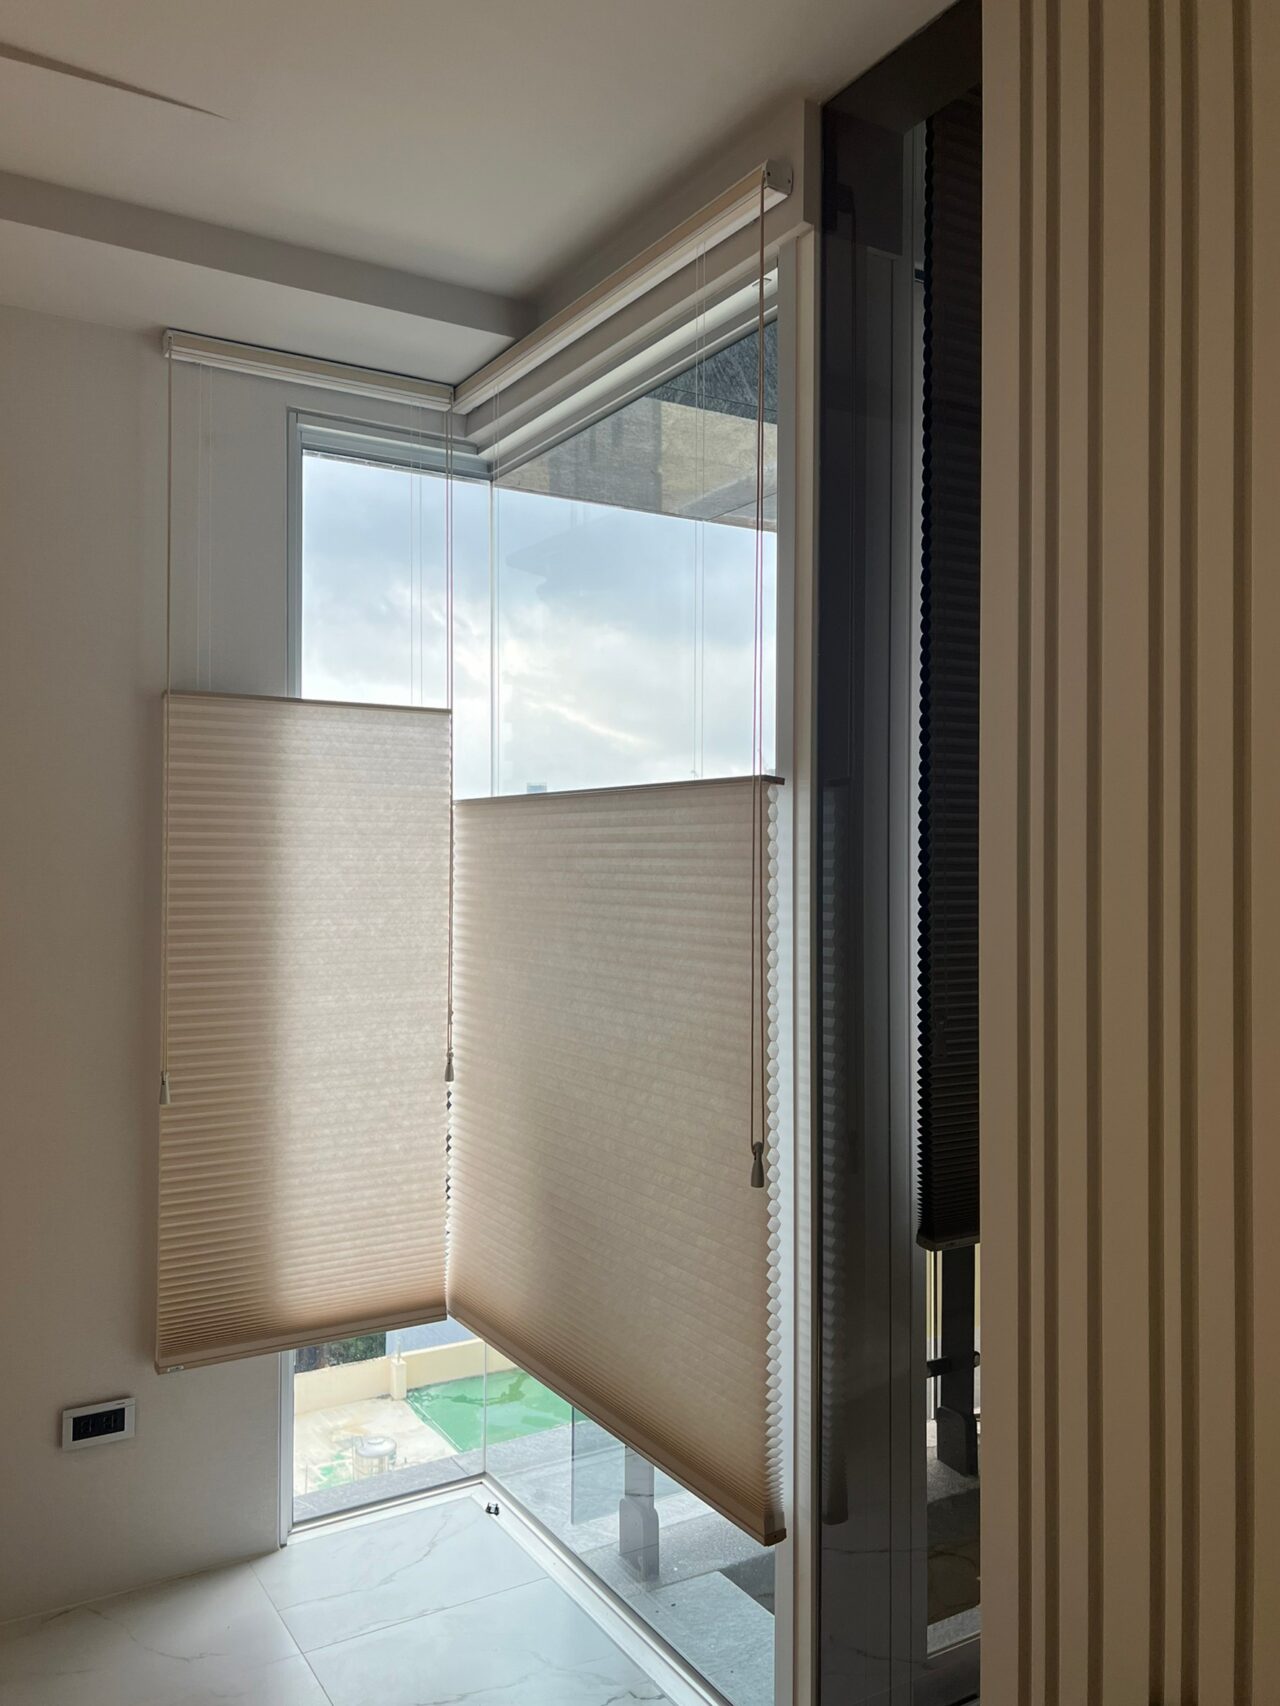 角落 L 型落地窗，讓室內增加自然光線與景觀，因此採用蜂巢簾，可上下移動，隨時調整視線區域內光線，既能保有隱私，也能有採光效果。